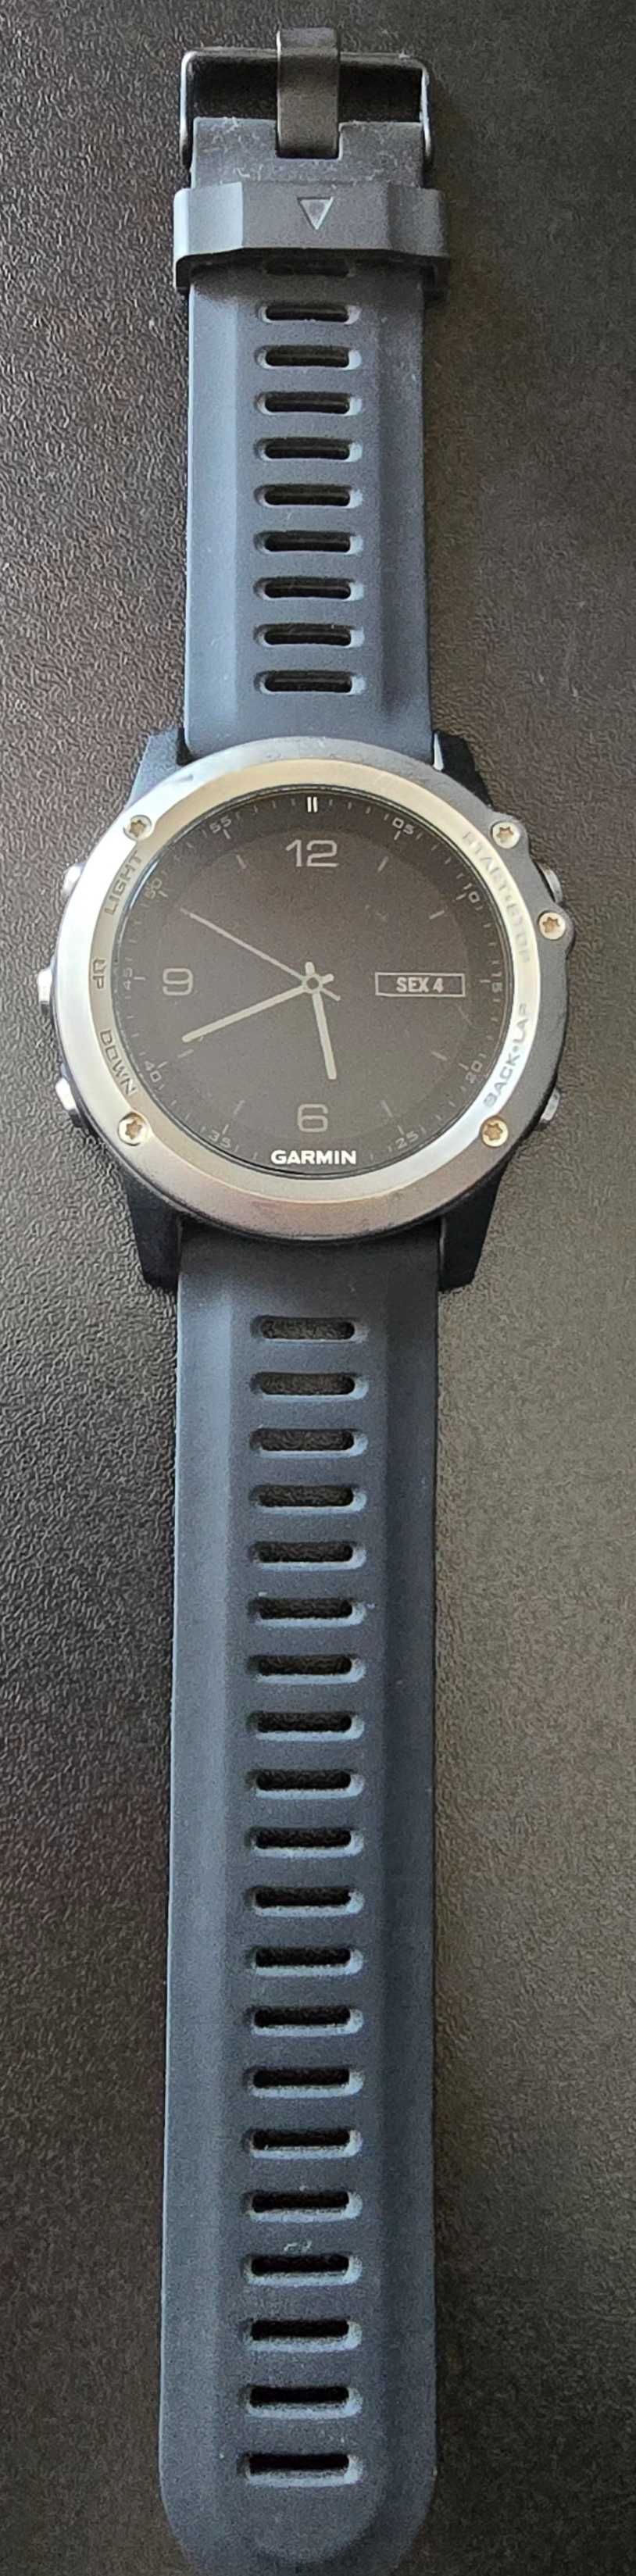 Relógio Garmin Fenix 3 HR